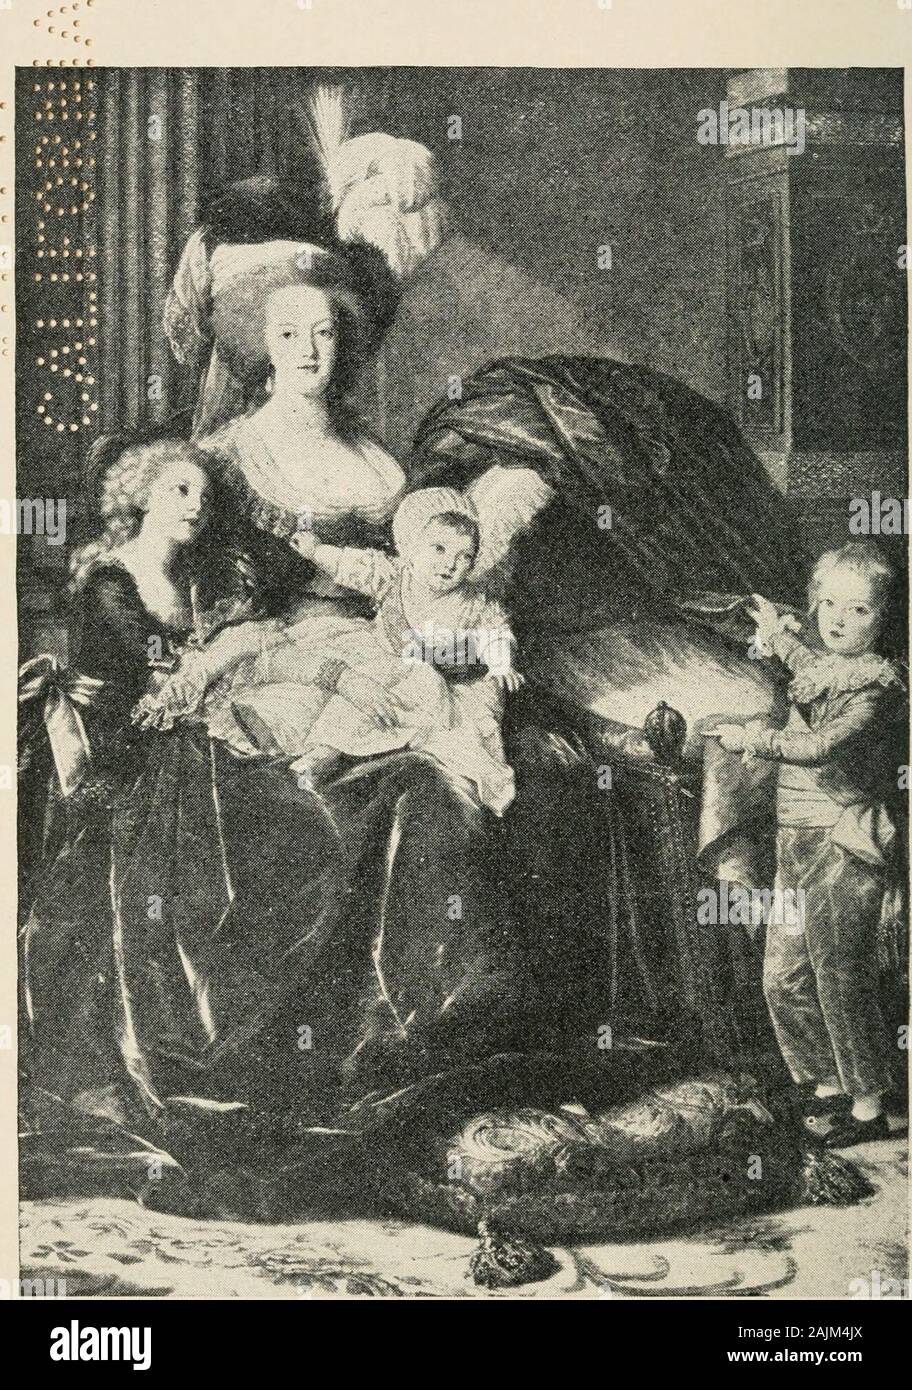 Marie Antoinette y la caída de la realeza . ,1^ ^ 1;^.:S/| m^m^. ??T^^^ .•??1. • ?Ji ? .JM--.vHi &gt; t.n* t ^ /J&lt;J!^^-vA V•?Wiy*-ila ?- /r&LT;?•. MARIK ANTOINKTTK HKR y tres hijos. Marie Antoinette en las Tullerías 1789-1791 POR IMBERT DE S AI NT-M A ND; A. ELIZABETH GILBERT MARTIN CON RETRATO NUEVO YORKCHARLES SCRIBNERS SONS 1891 X)Cl37 TL3S oo t c c c COPYRIGHT, 189I, por Charles SCRIiJl^ERS ^ONS. c c c c c c * . ( C F C ( c &LT;. c c ". C C C C C C C c c c c c c t00imberich ?marieantoinetted Foto de stock